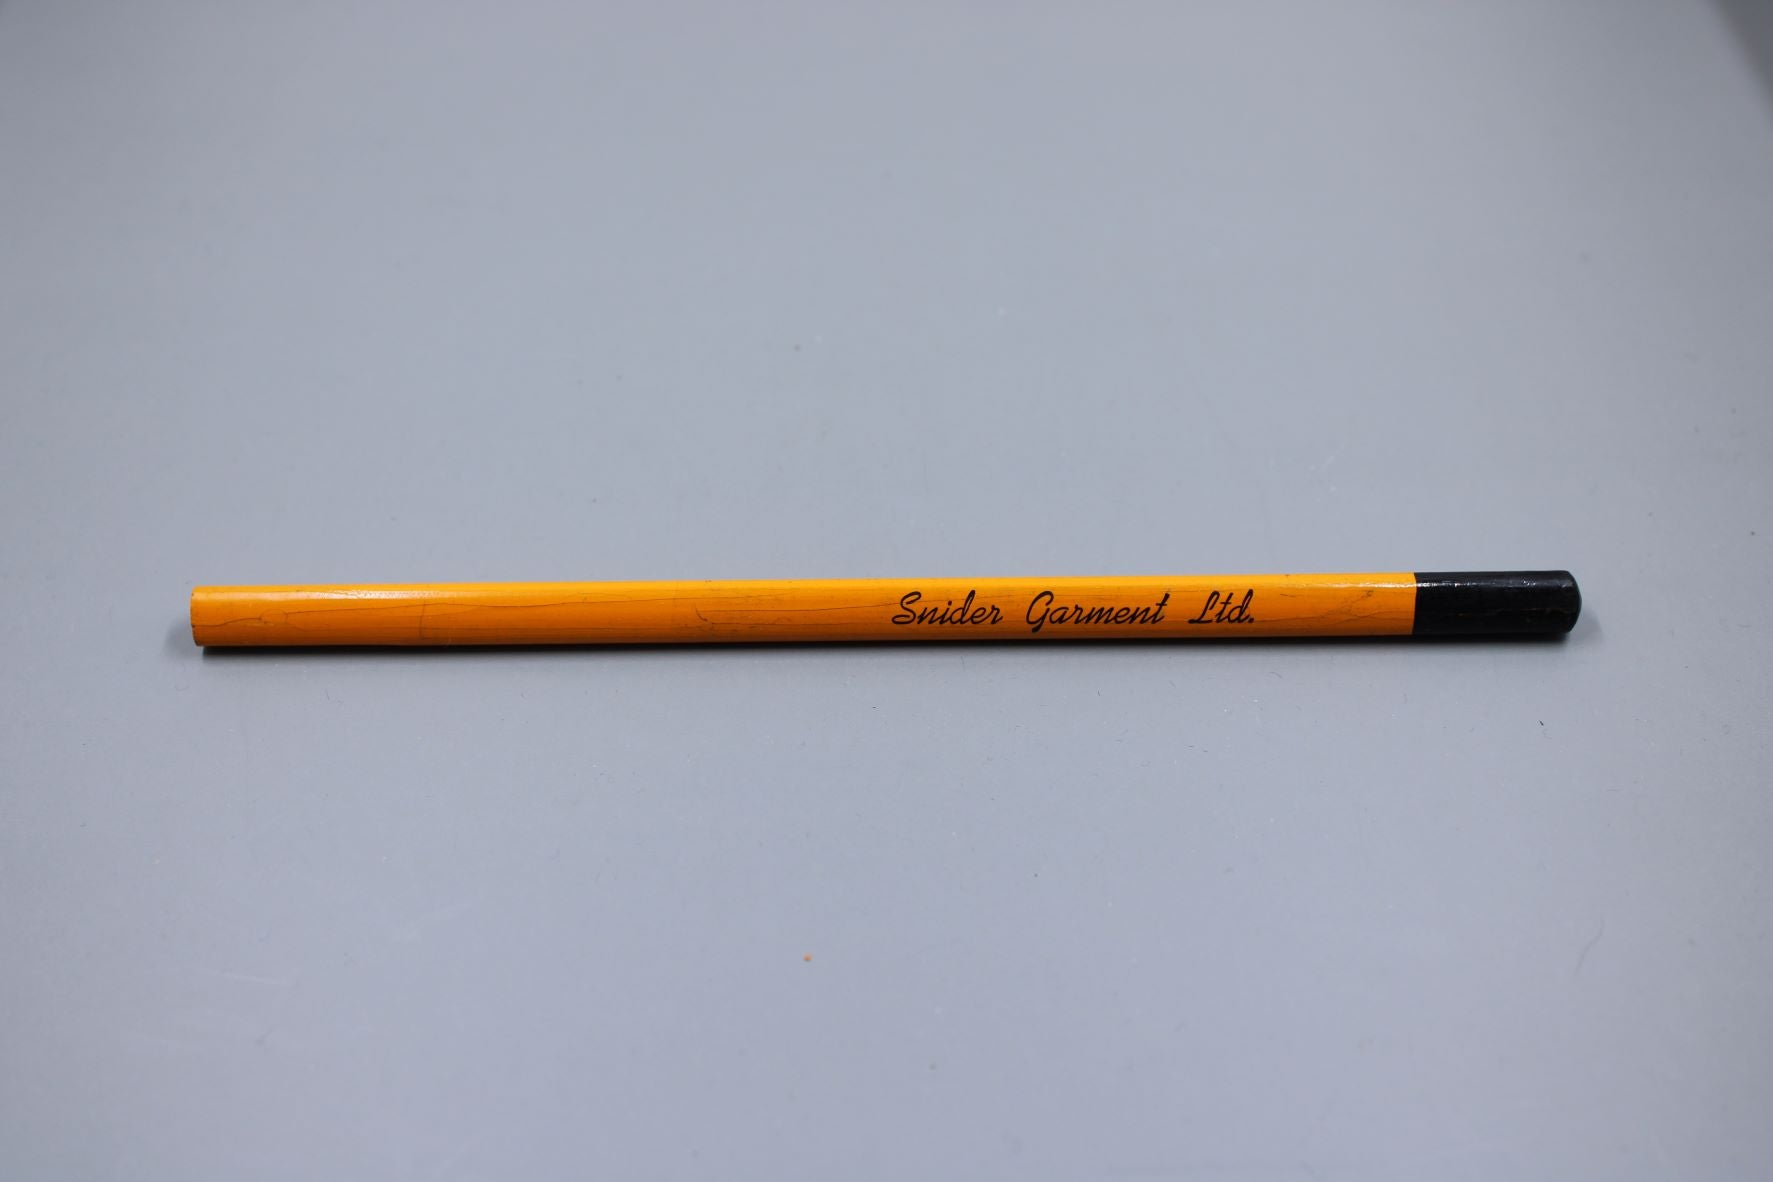 Vintage Advertising Pencil - Snider Garment Ltd. - Toronto